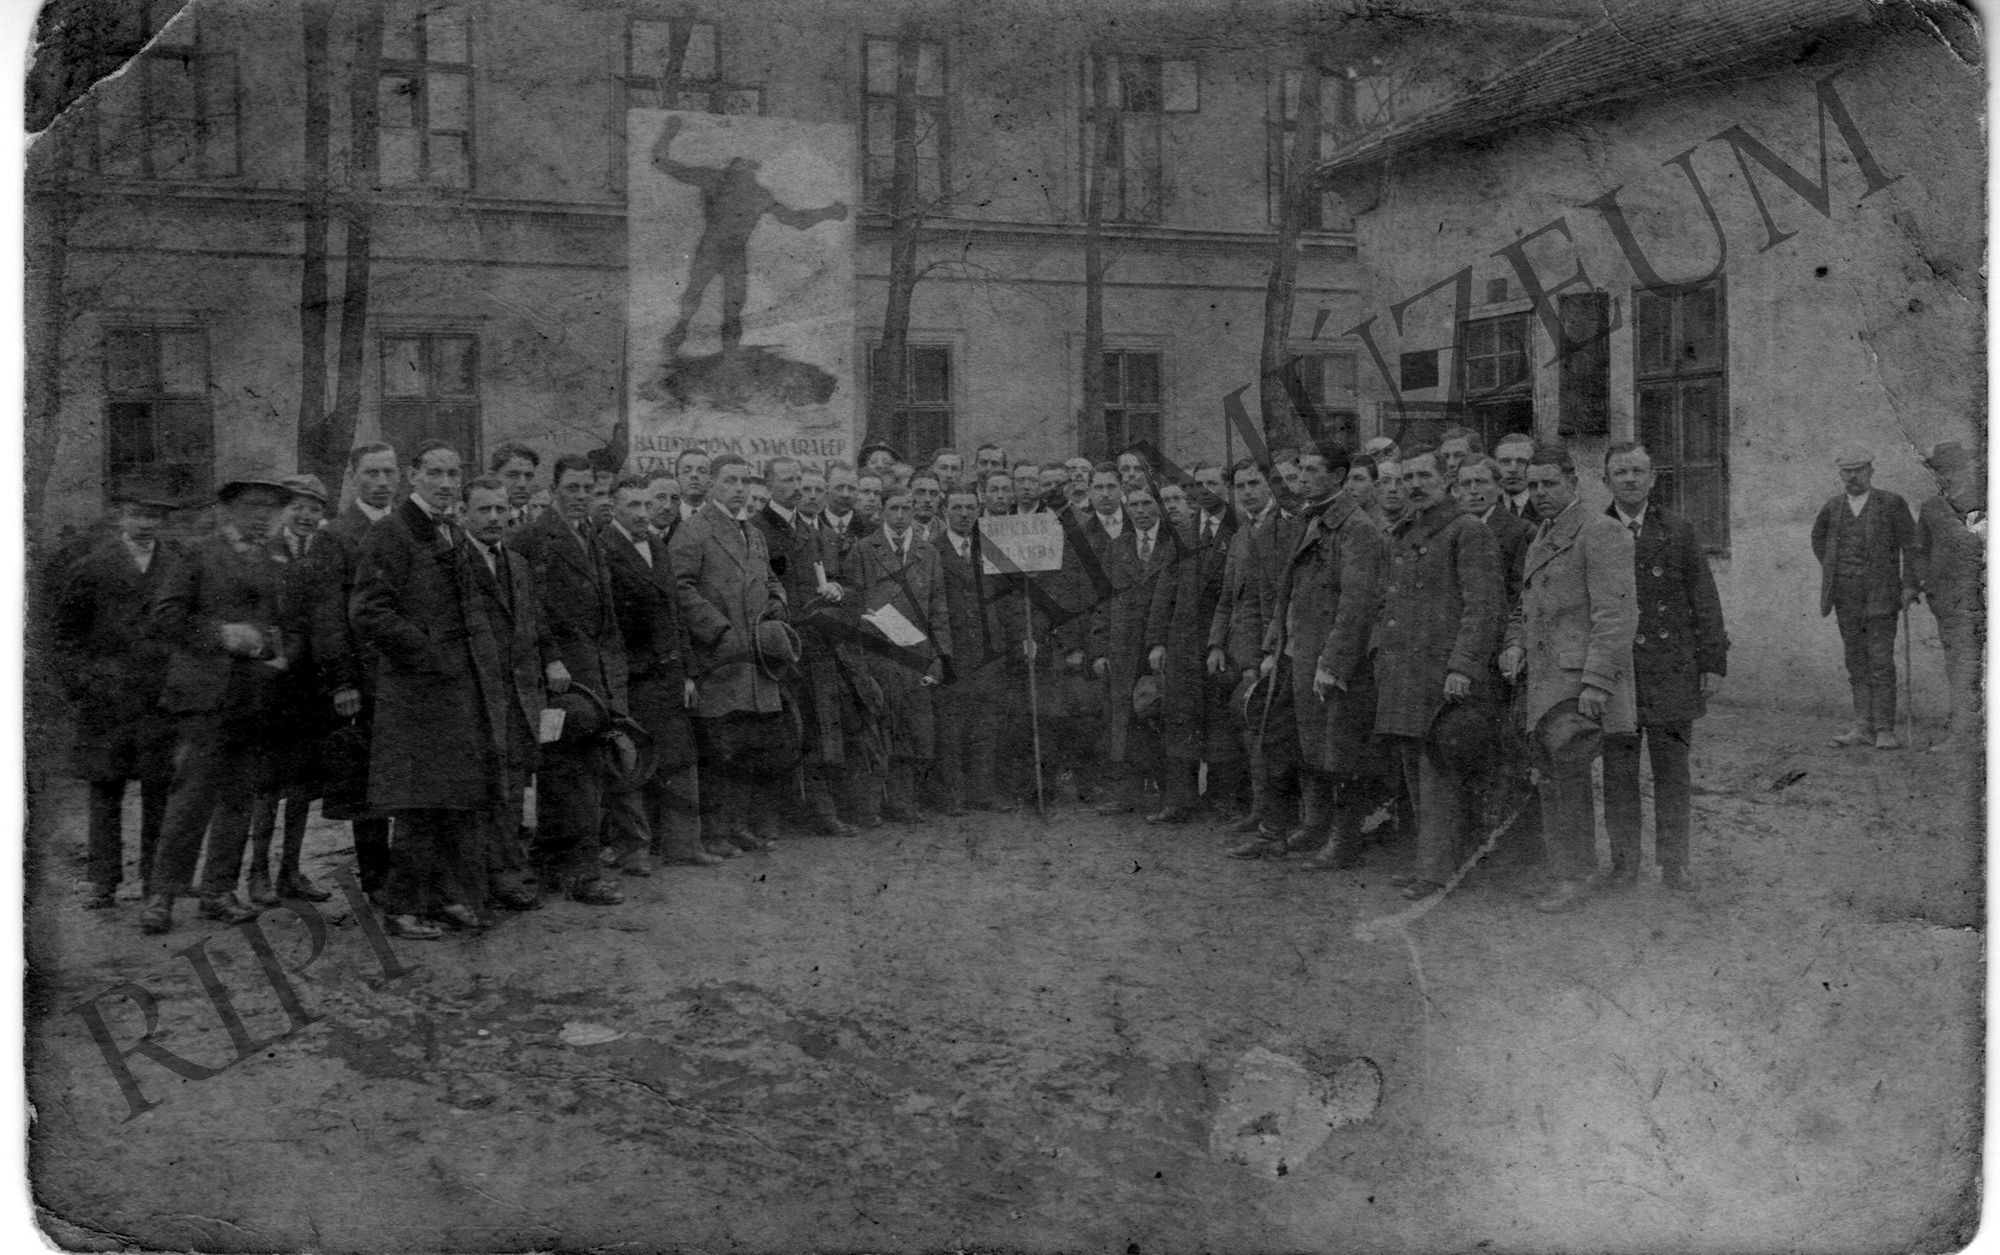 A kaposvári munkás dalárda csoportképe (Rippl-Rónai Múzeum CC BY-NC-SA)